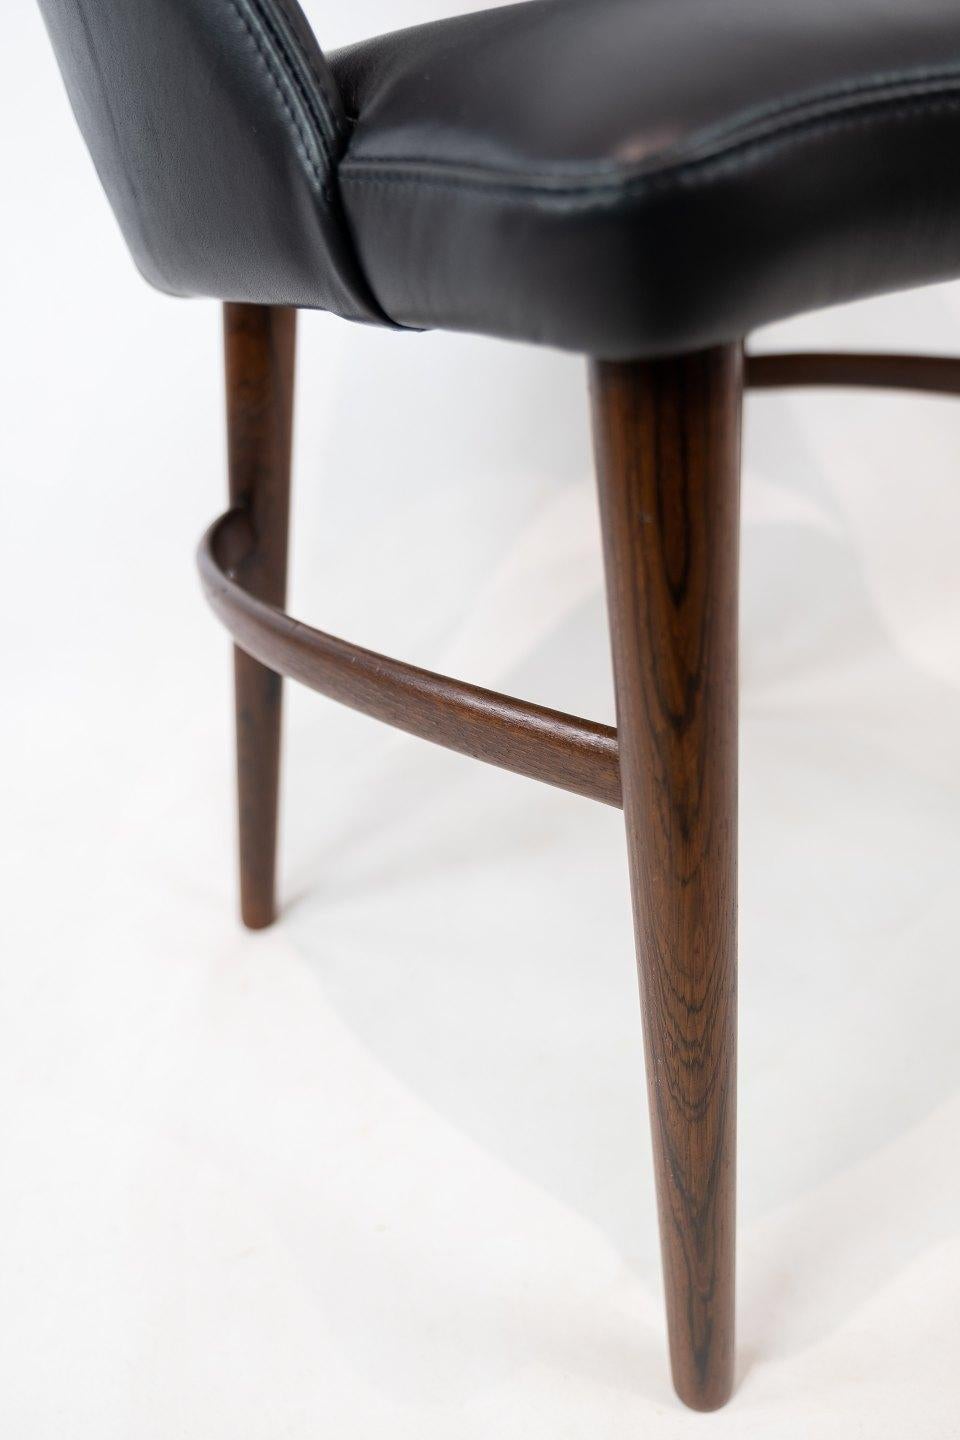 Fauteuil rembourré en cuir noir et pieds en palissandre conçu par Chr. Linneberg des années 1960. La chaise est en très bon état vintage.
  